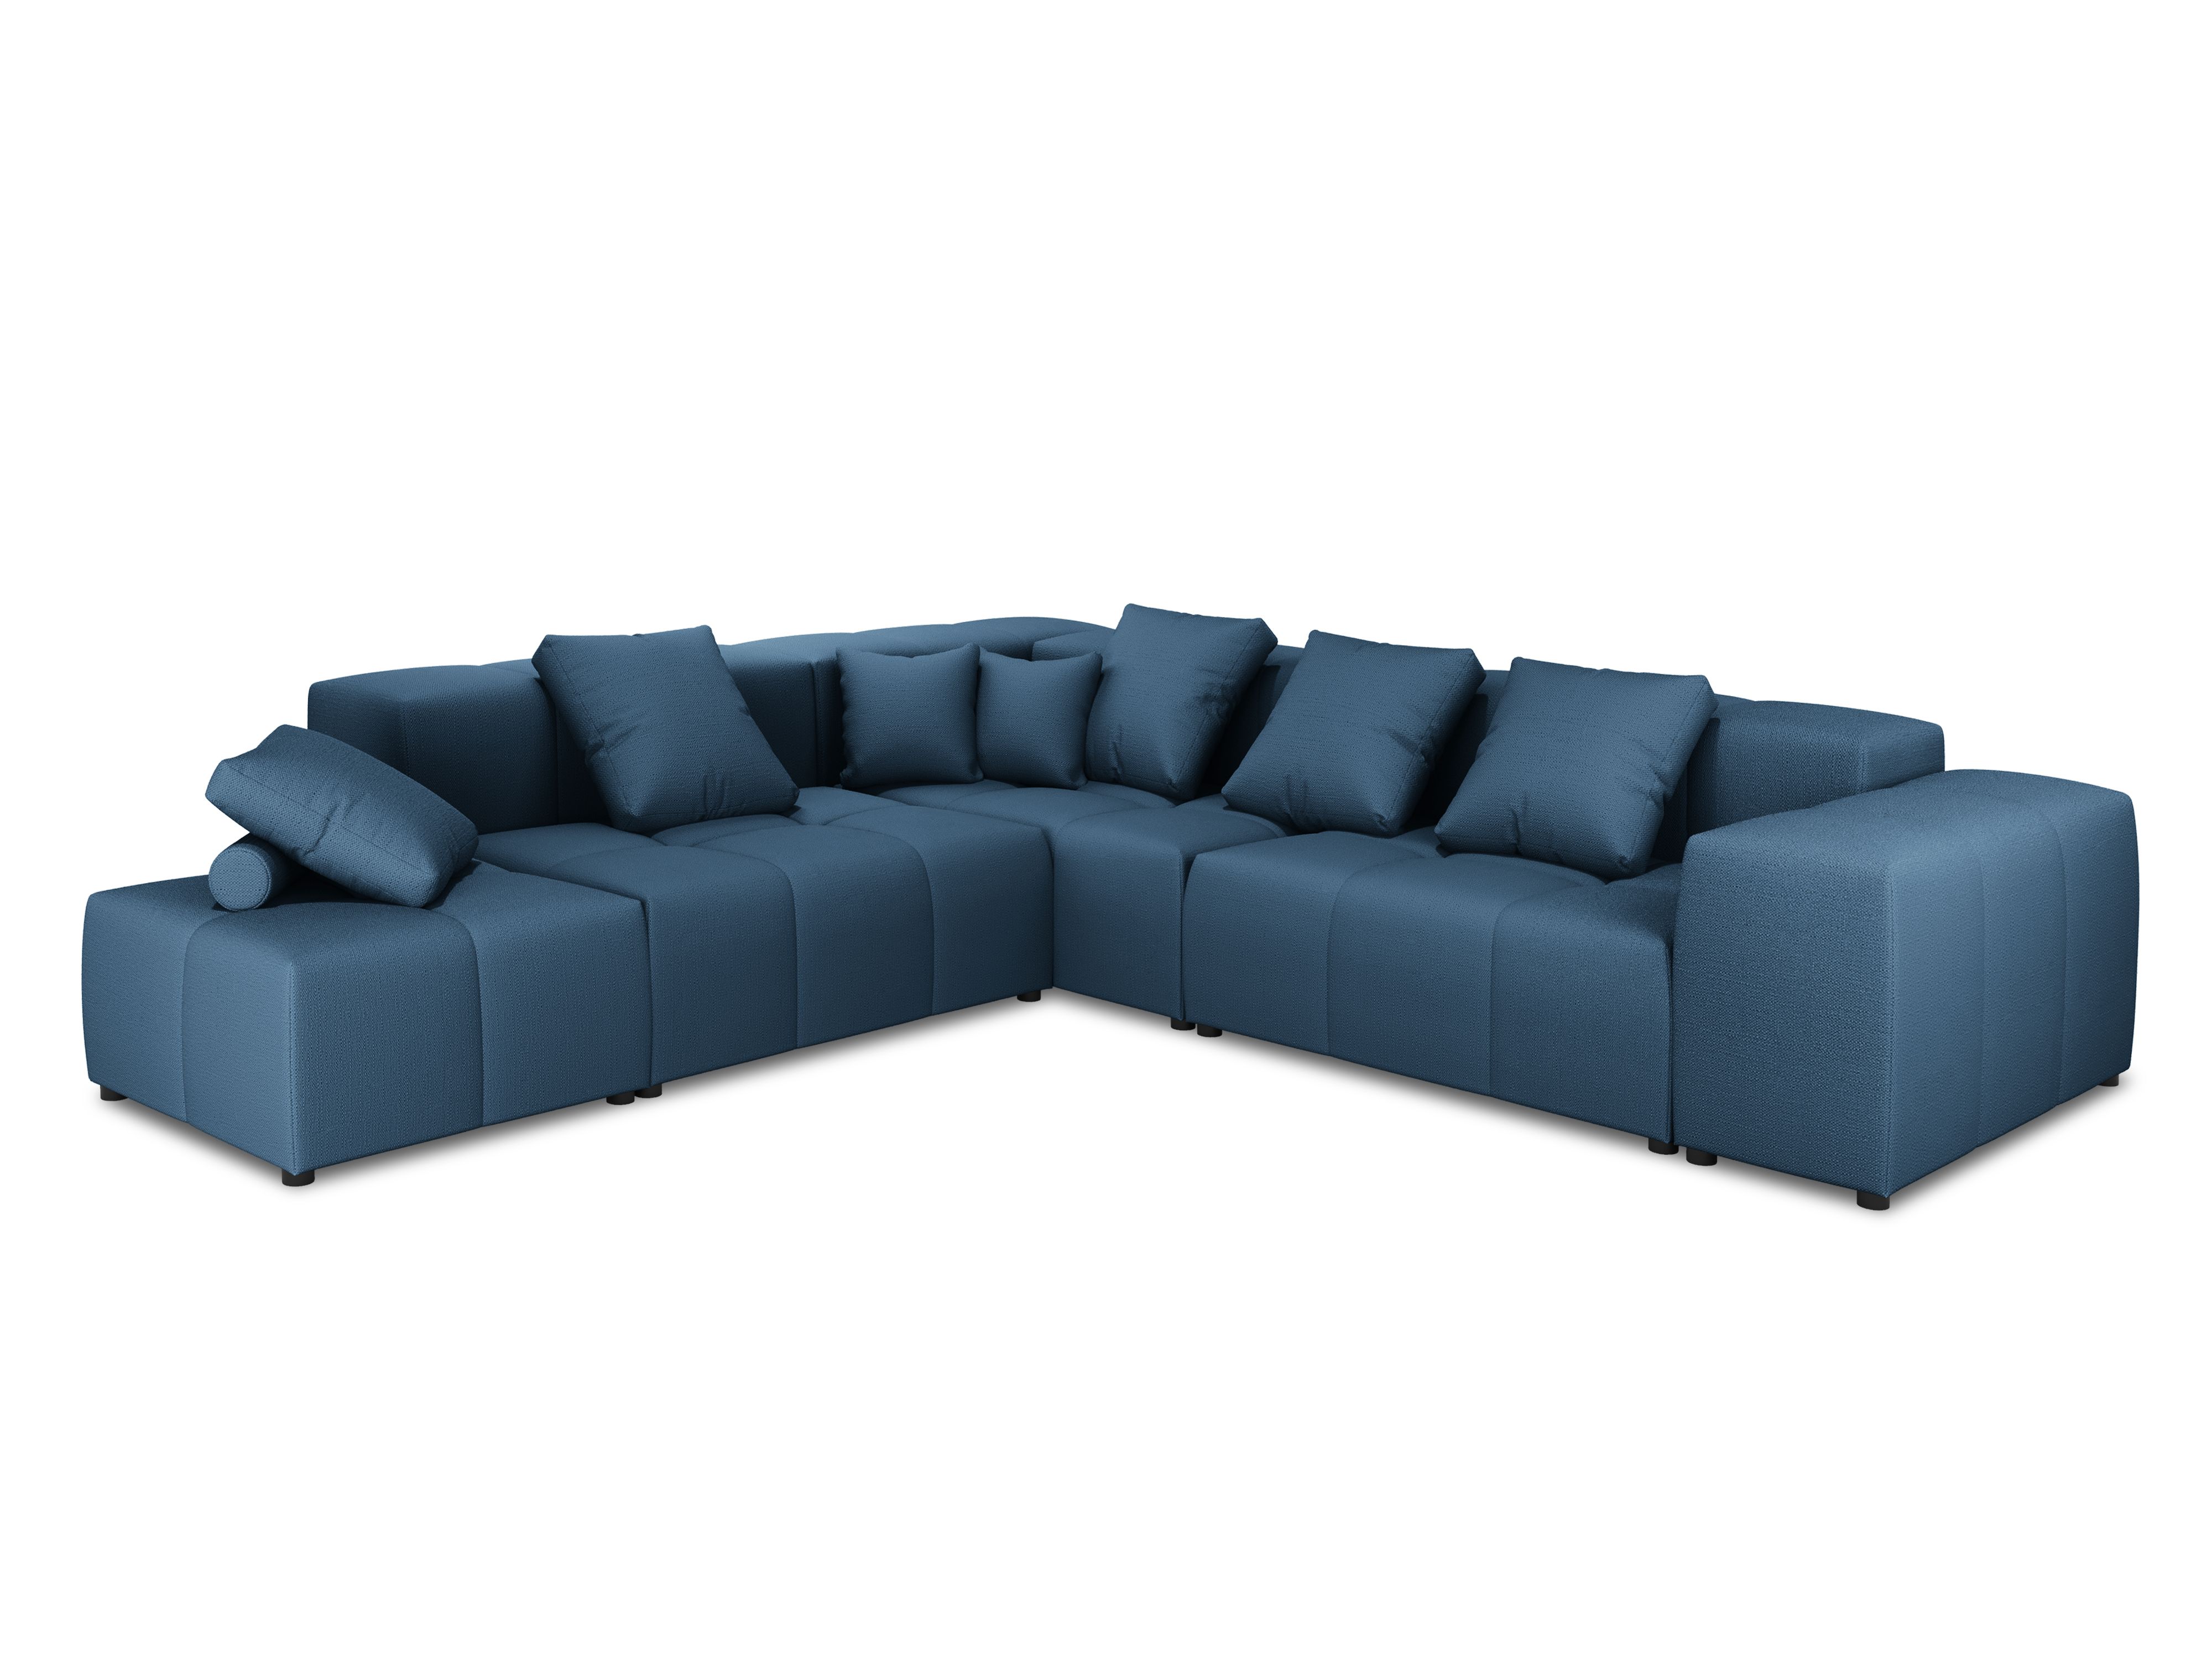 Canapé d'angle tissu structuré bleu foncé 5 places réversible